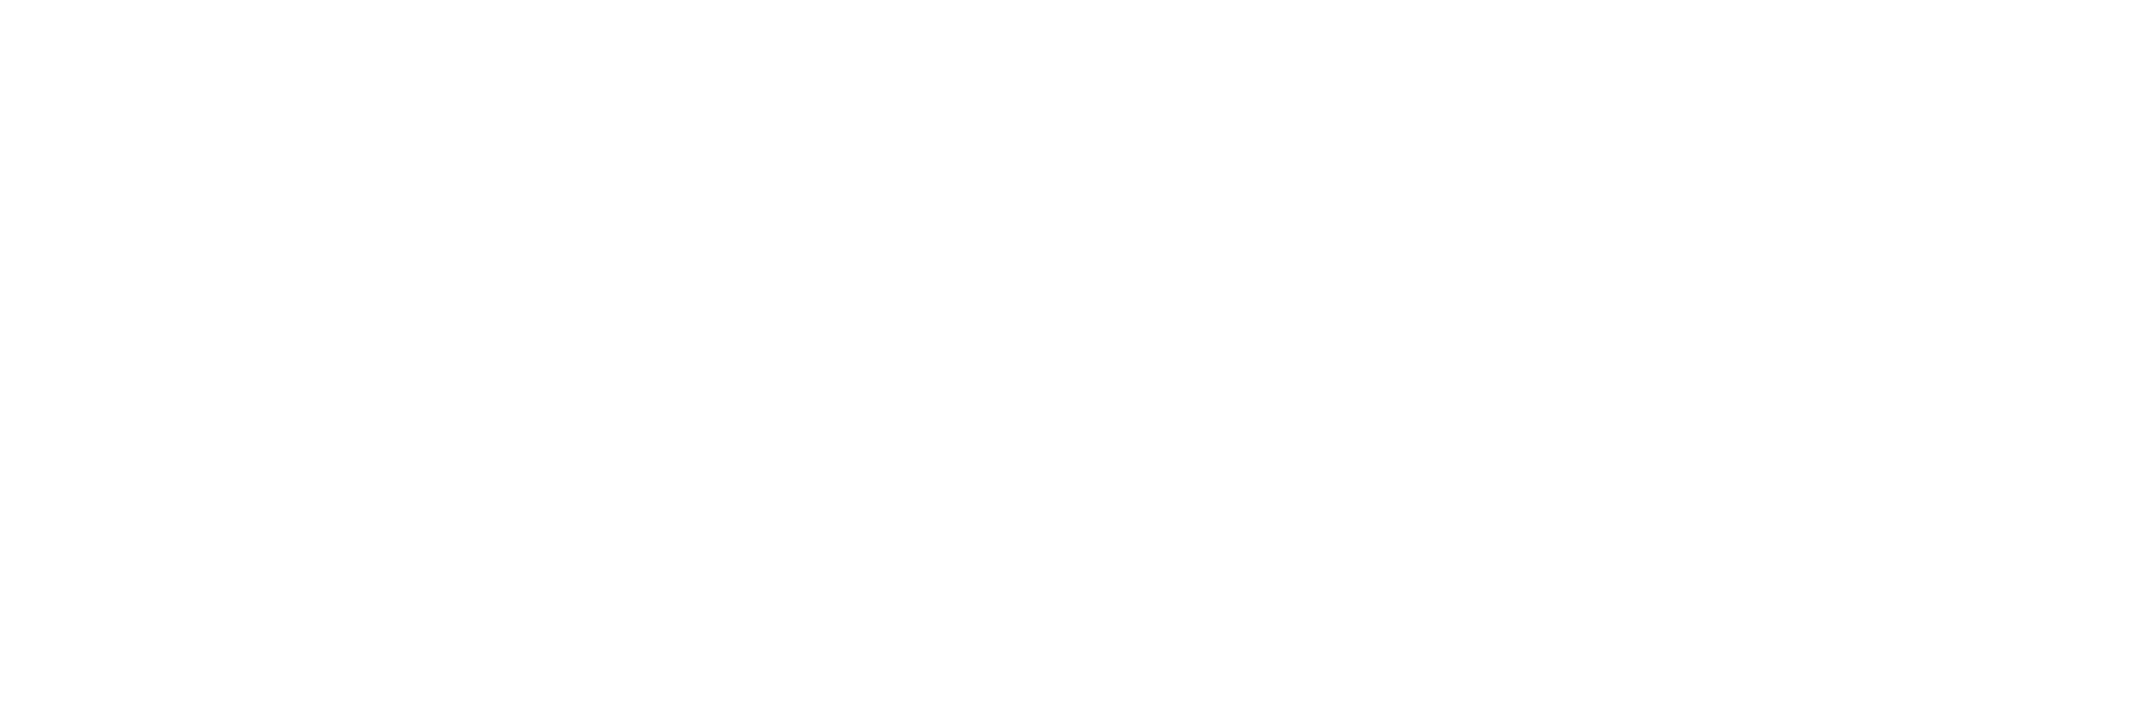 Applus Logo